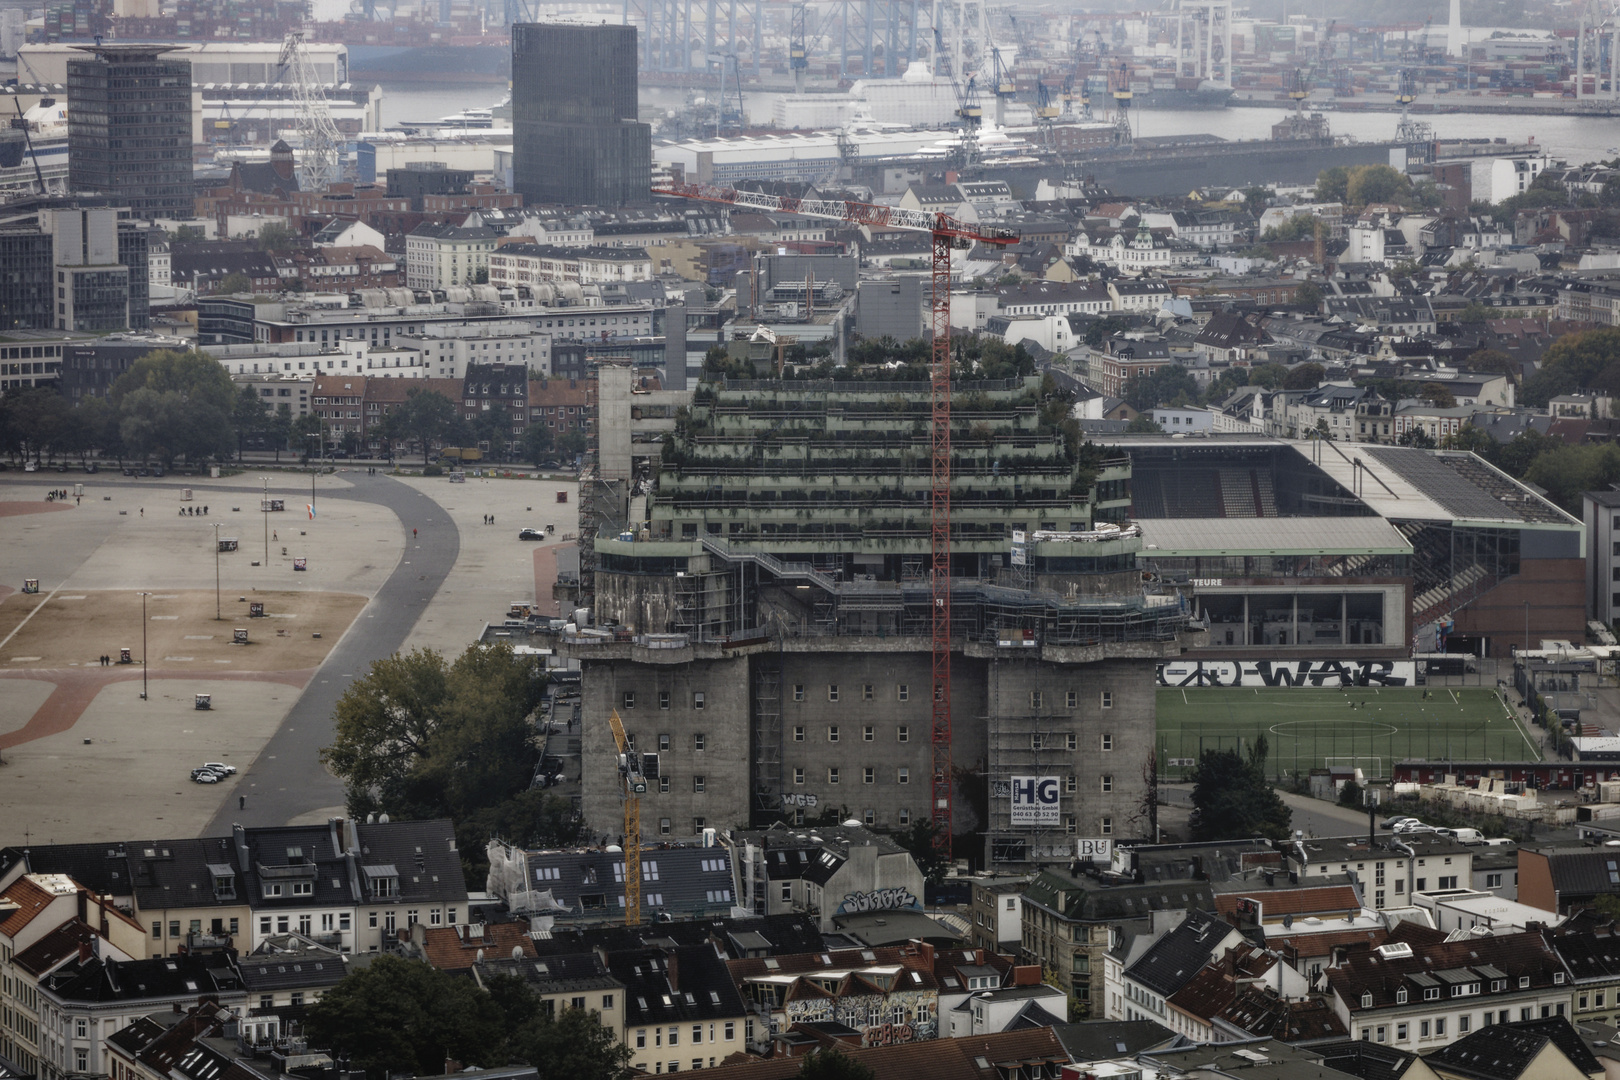 Bilder aus dem Hamburger Fernsehturm, Besichtigung 2023